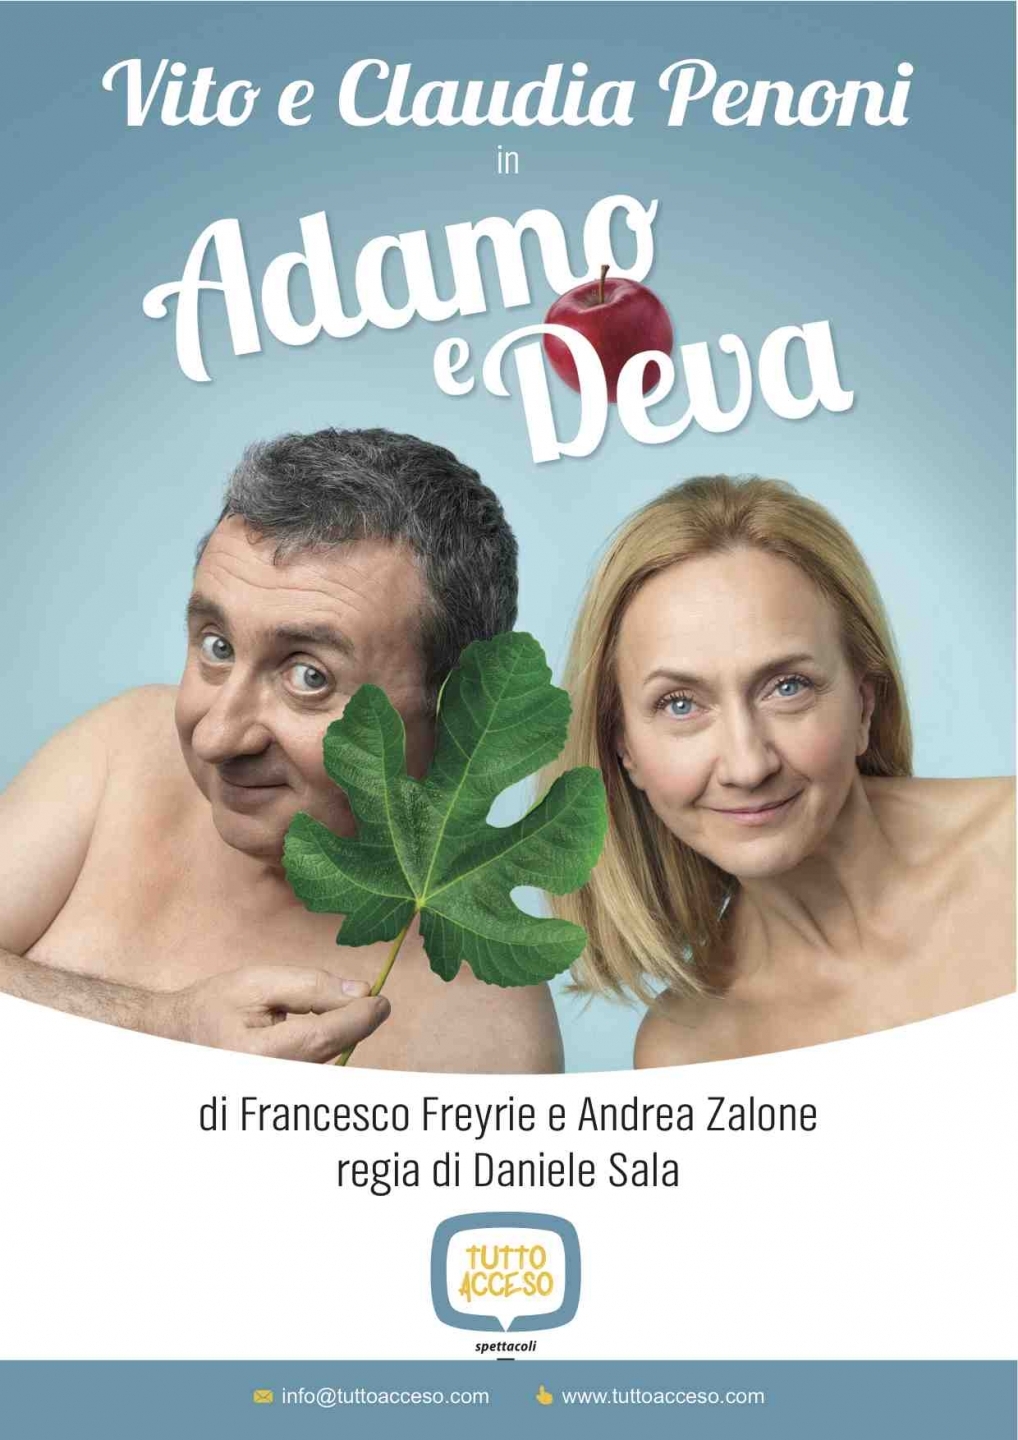 Adamo e Deva, il nuovo show teatrale di Vito e Claudia Penoni!